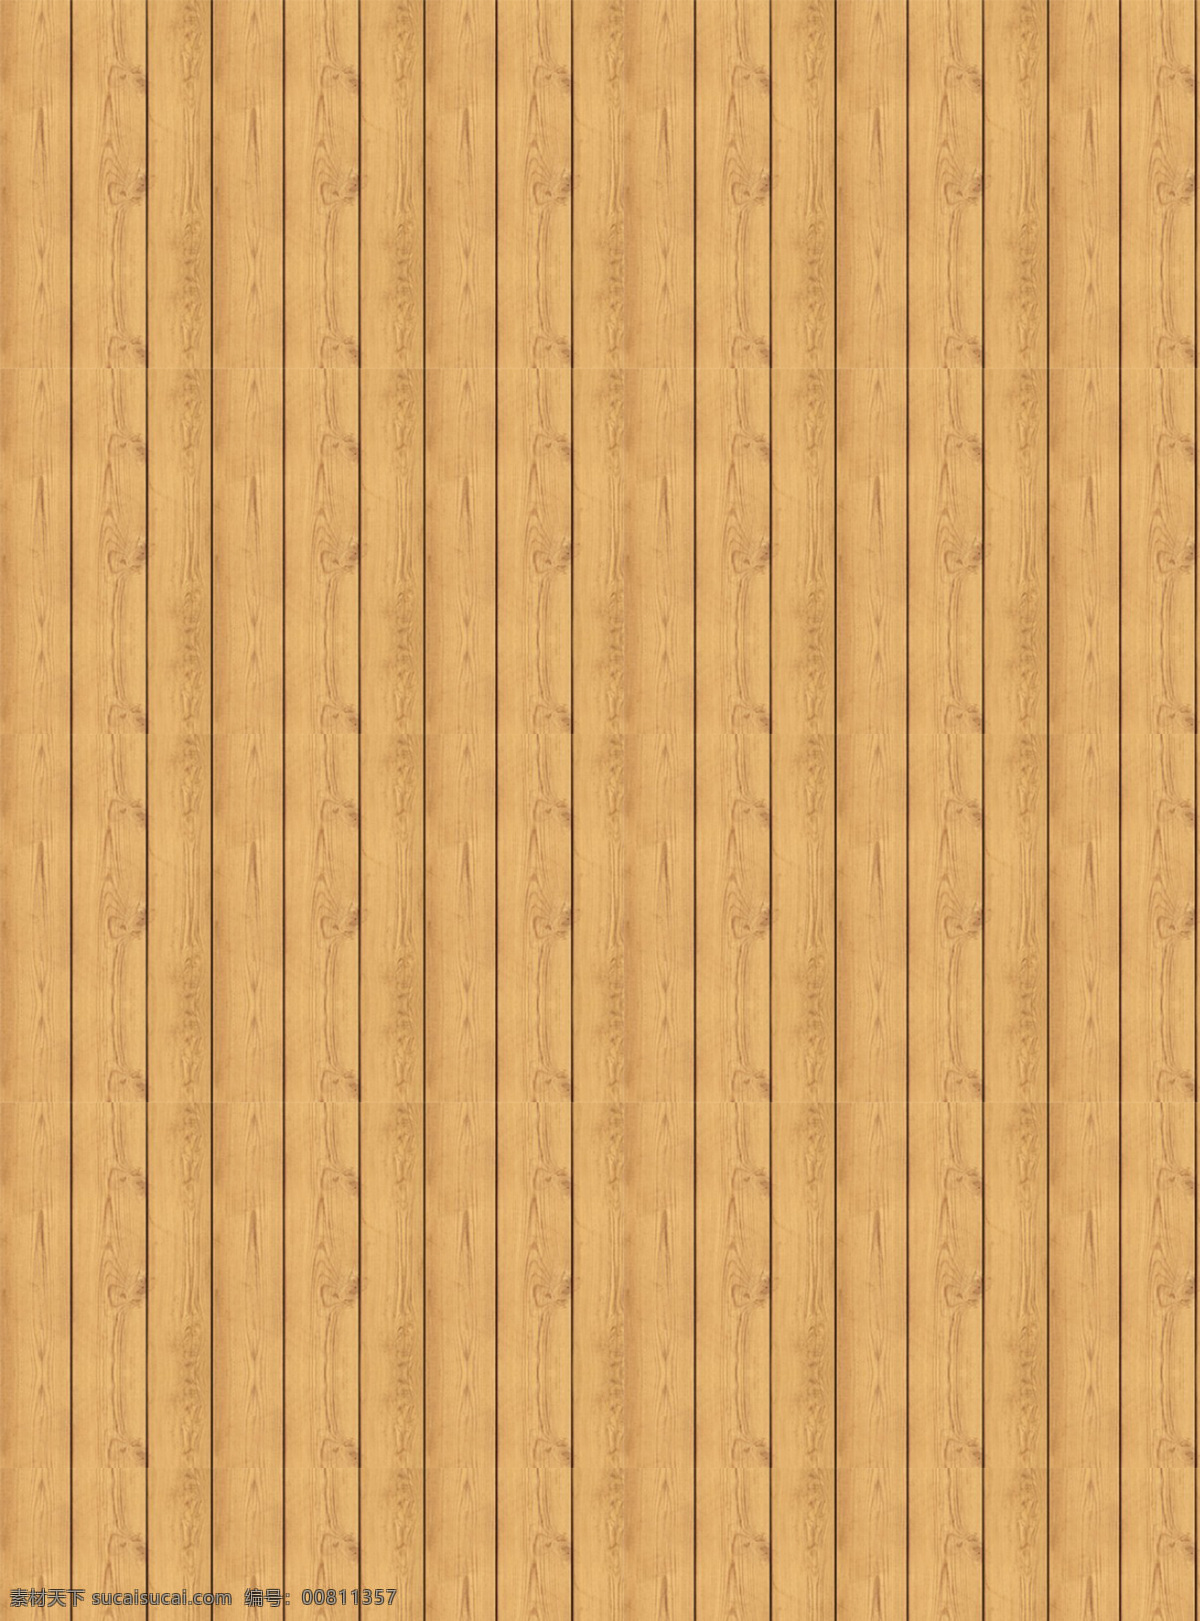 竖向 浅色 窄 木板 背景 温馨 排列 自然 木质 木头 木纹 纹理 肌理 底纹 插图 简约 朴素 质朴 黄色 高清 木 木地板 设计元素素材 设计背景素材 底纹边框 背景底纹